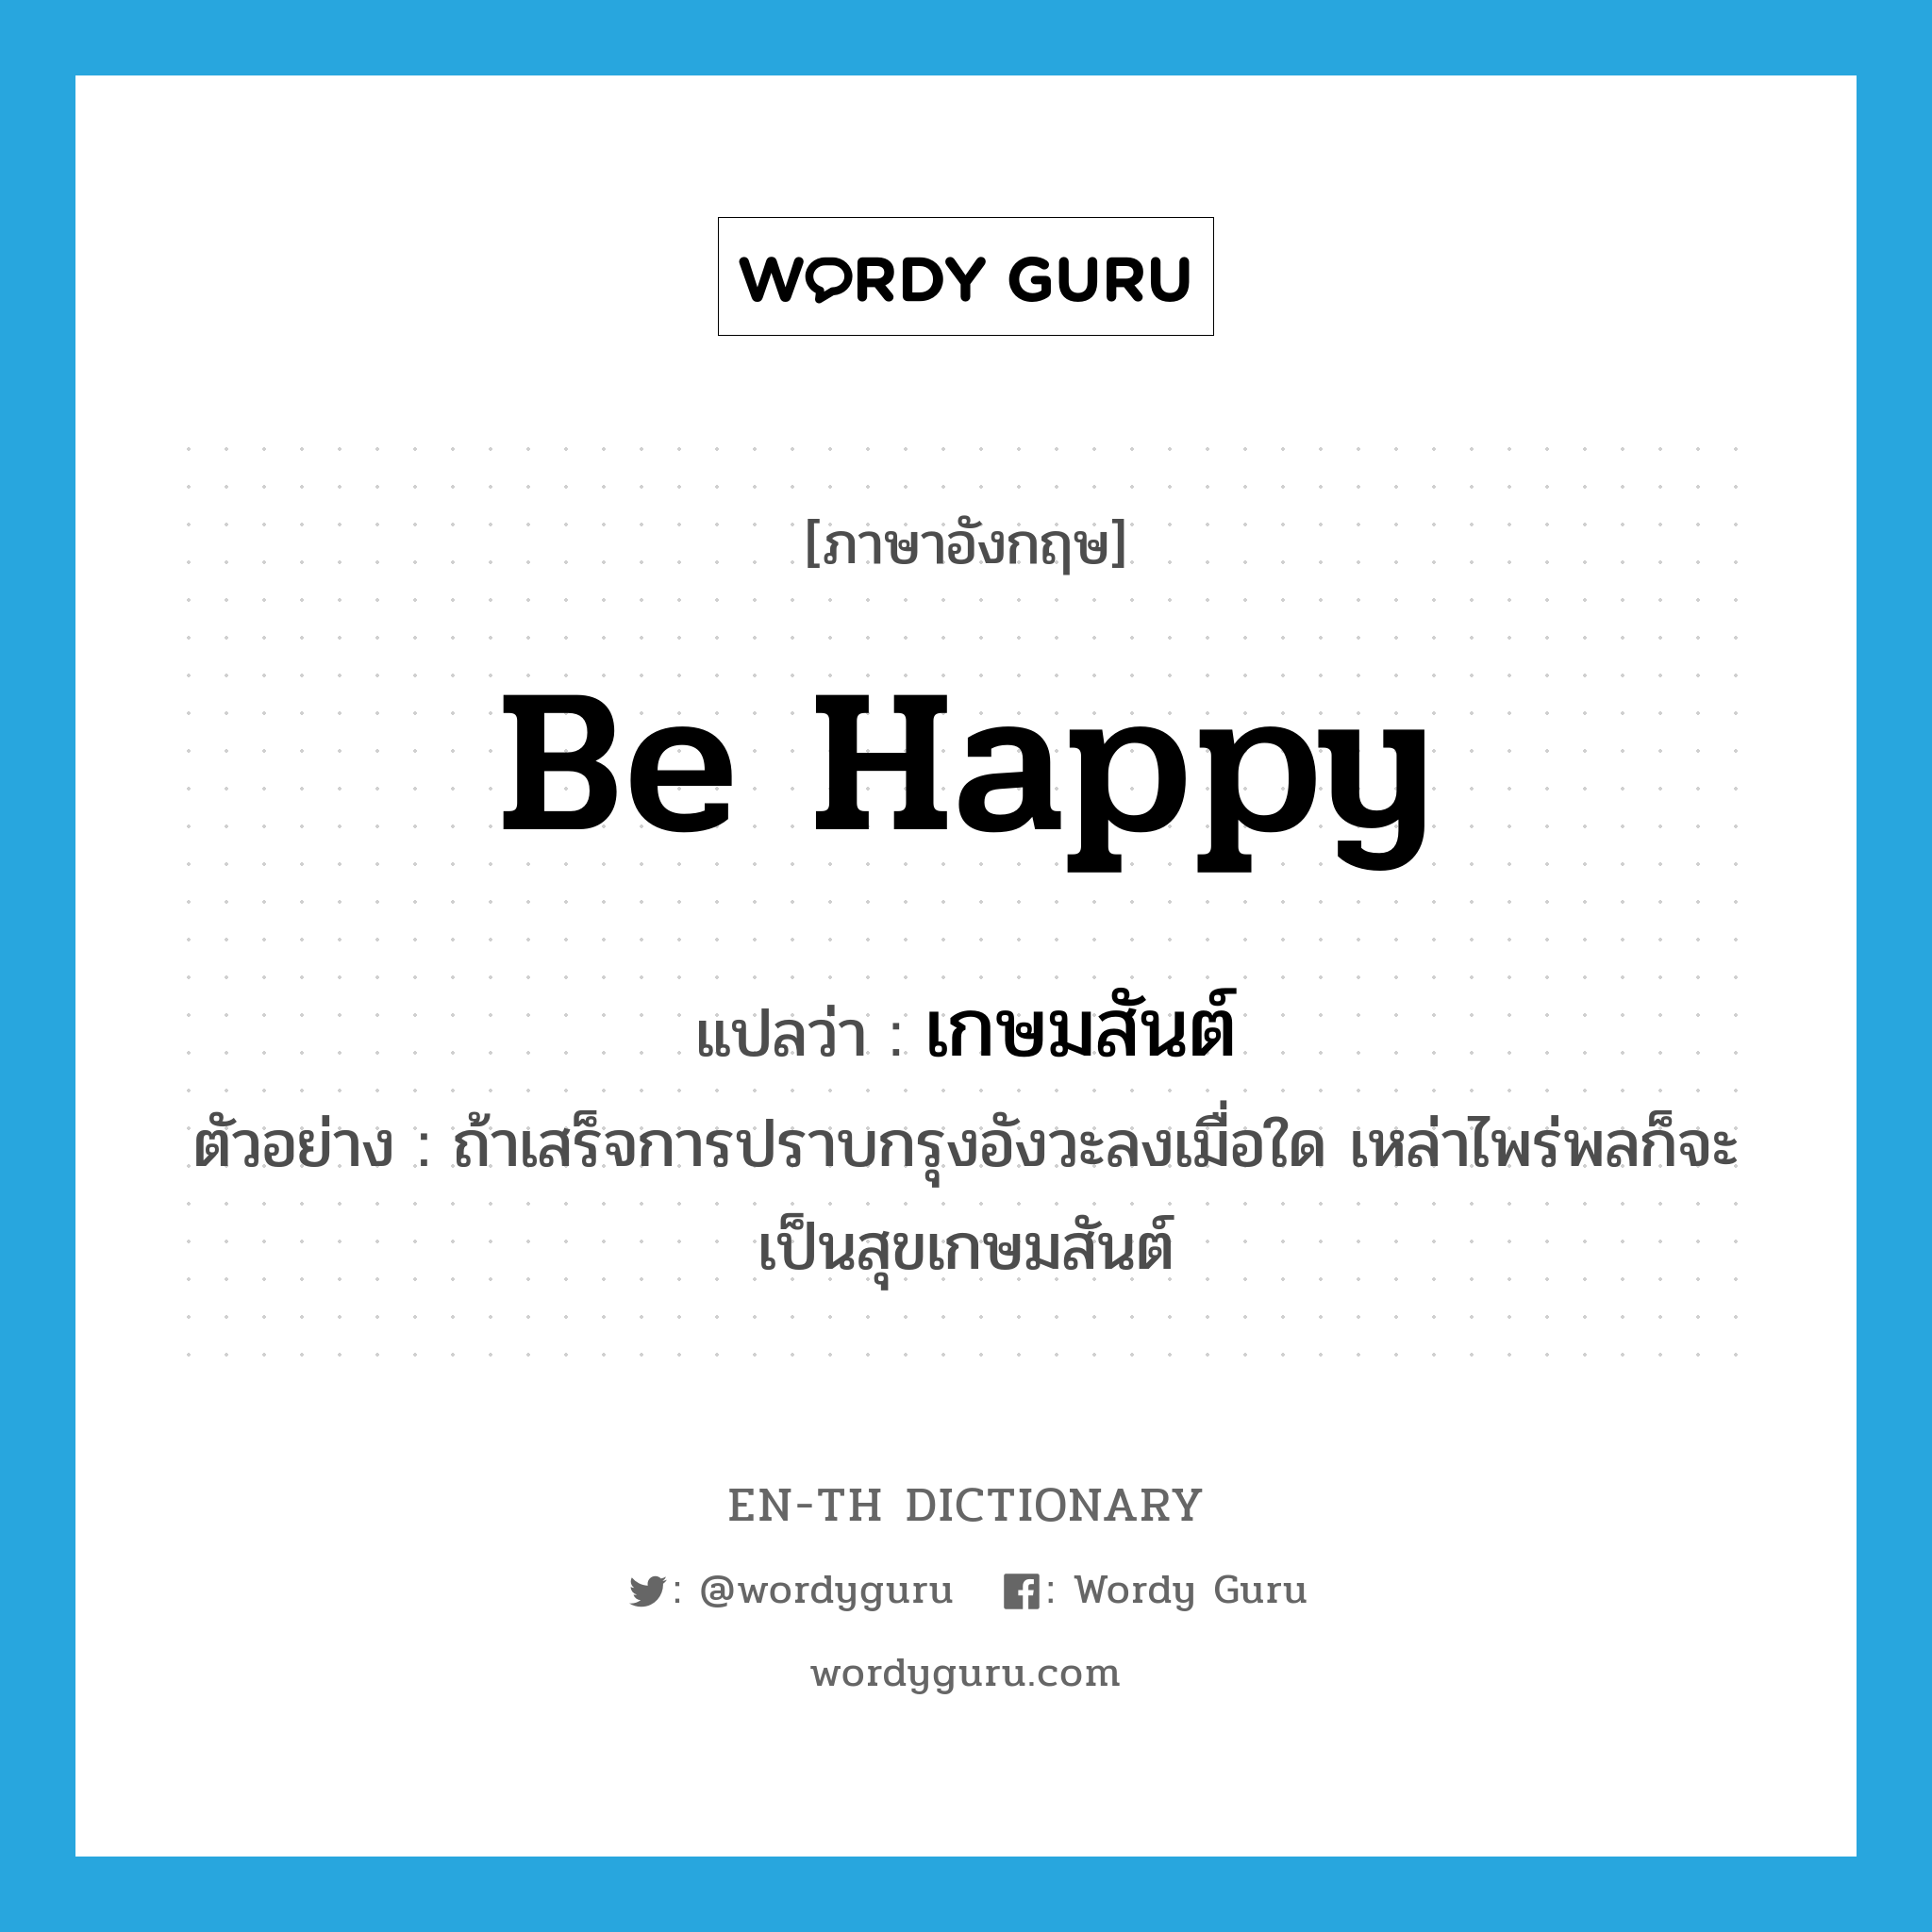 be happy แปลว่า?, คำศัพท์ภาษาอังกฤษ be happy แปลว่า เกษมสันต์ ประเภท V ตัวอย่าง ถ้าเสร็จการปราบกรุงอังวะลงเมื่อใด เหล่าไพร่พลก็จะเป็นสุขเกษมสันต์ หมวด V